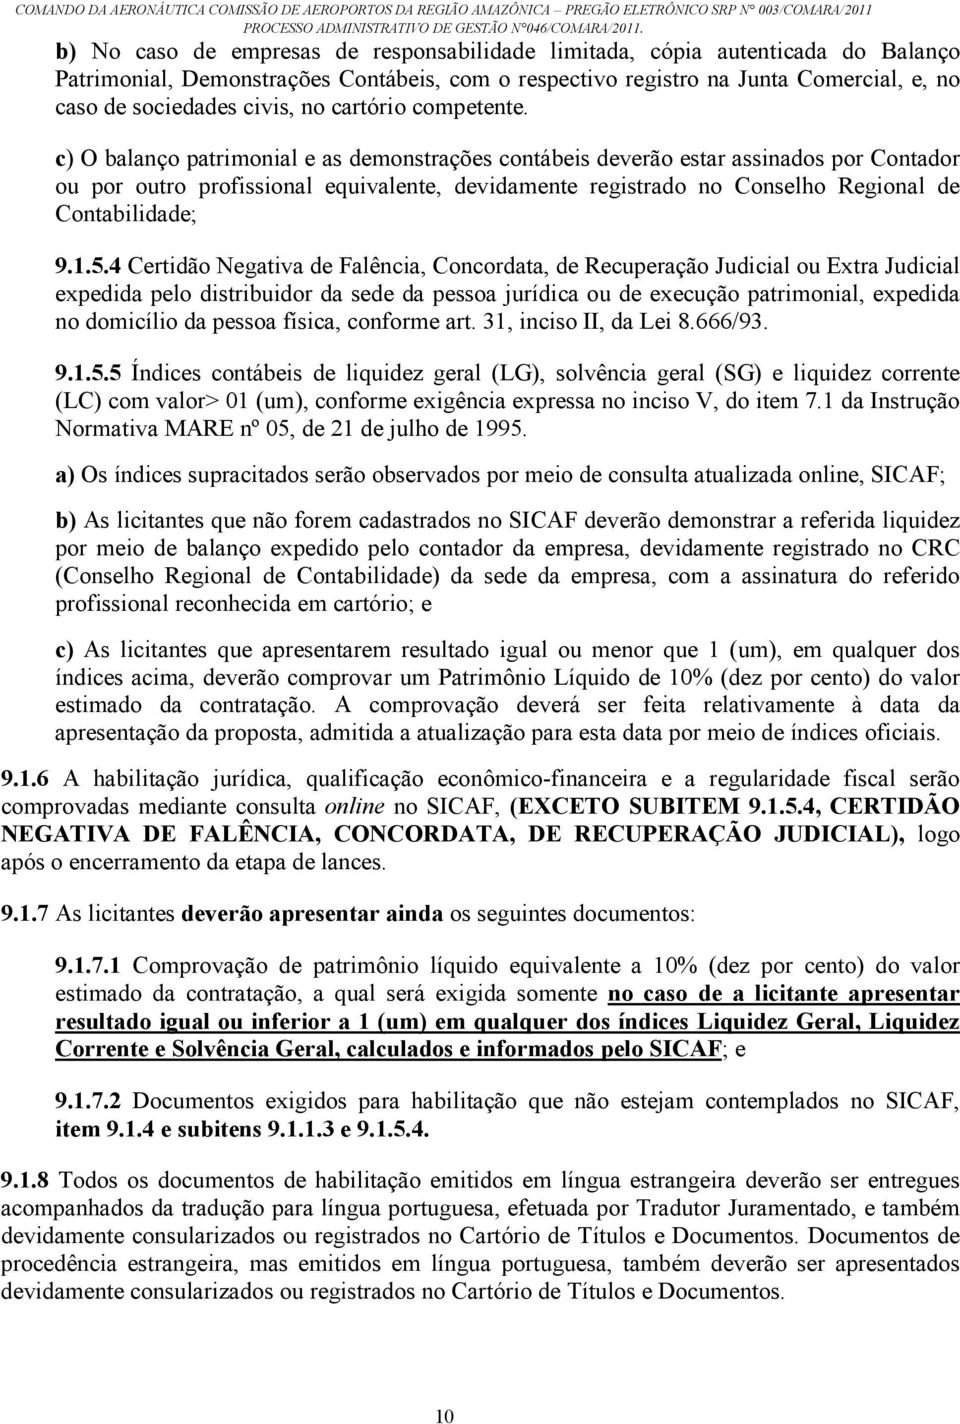 c) O balanço patrimonial e as demonstrações contábeis deverão estar assinados por Contador ou por outro profissional equivalente, devidamente registrado no Conselho Regional de Contabilidade; 9.1.5.